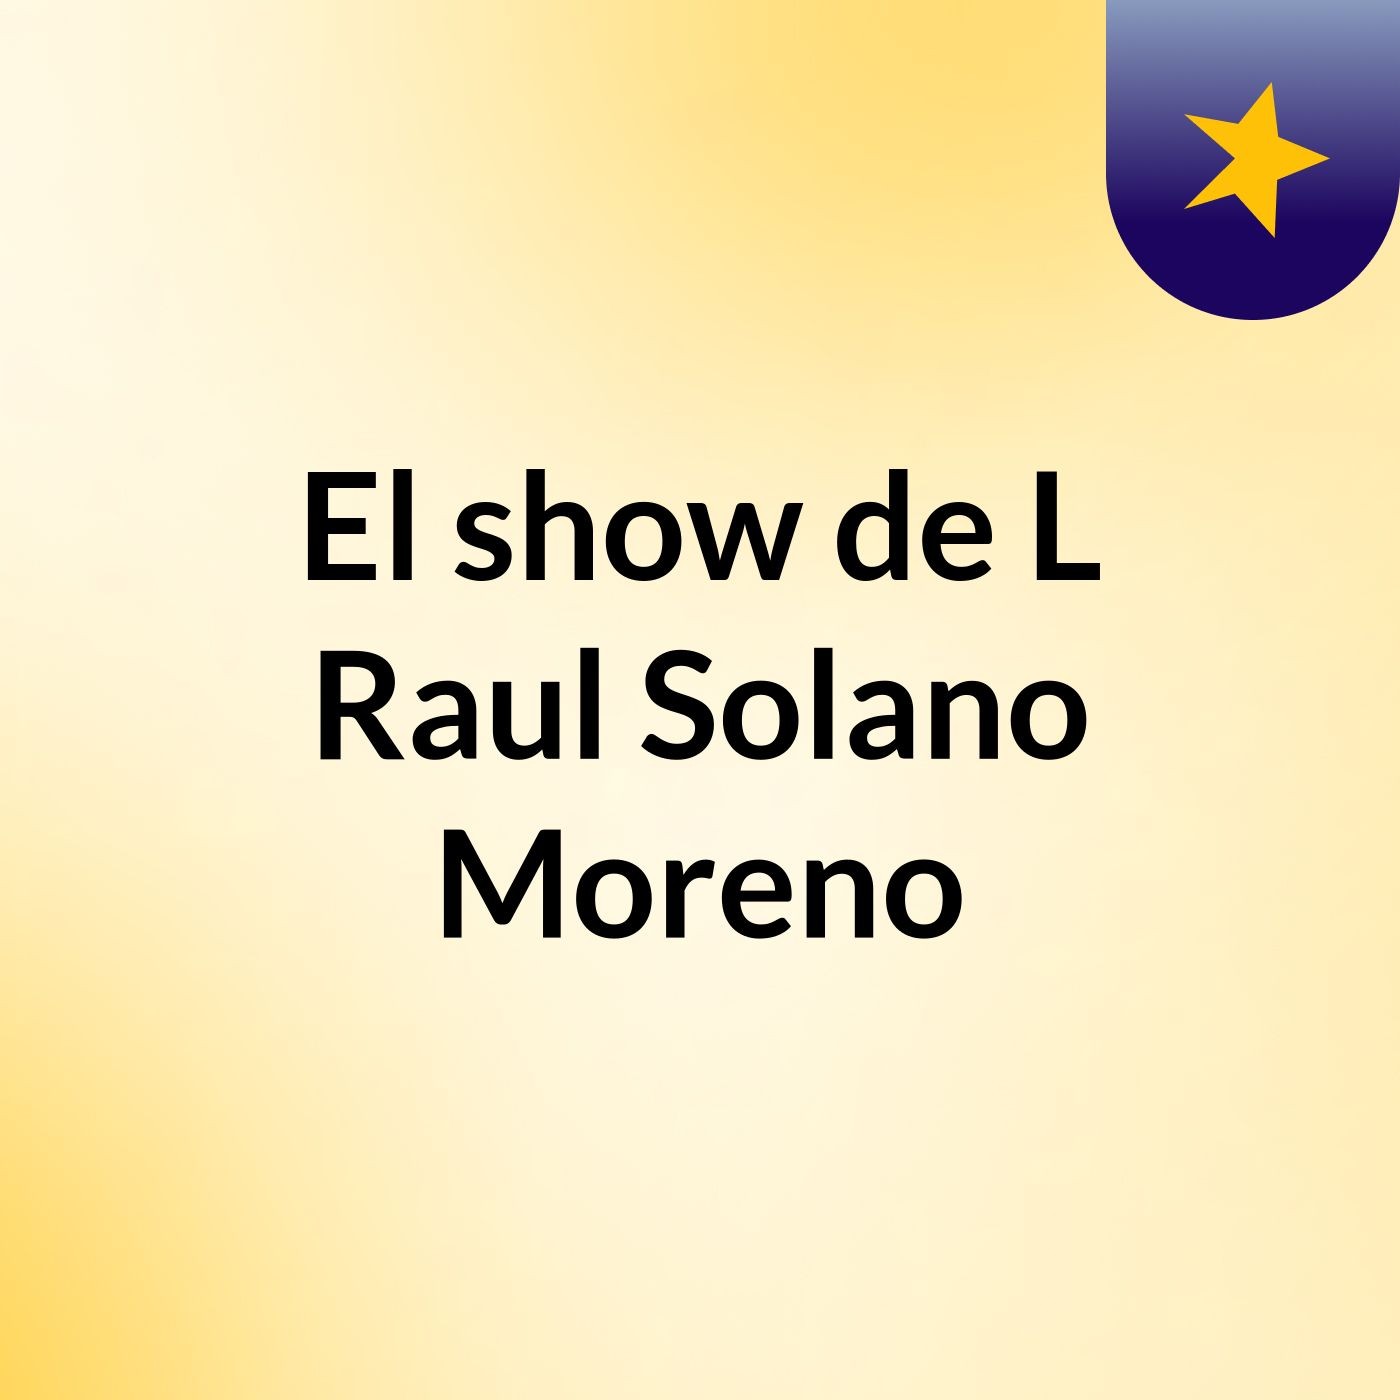 El show de L Raul Solano Moreno